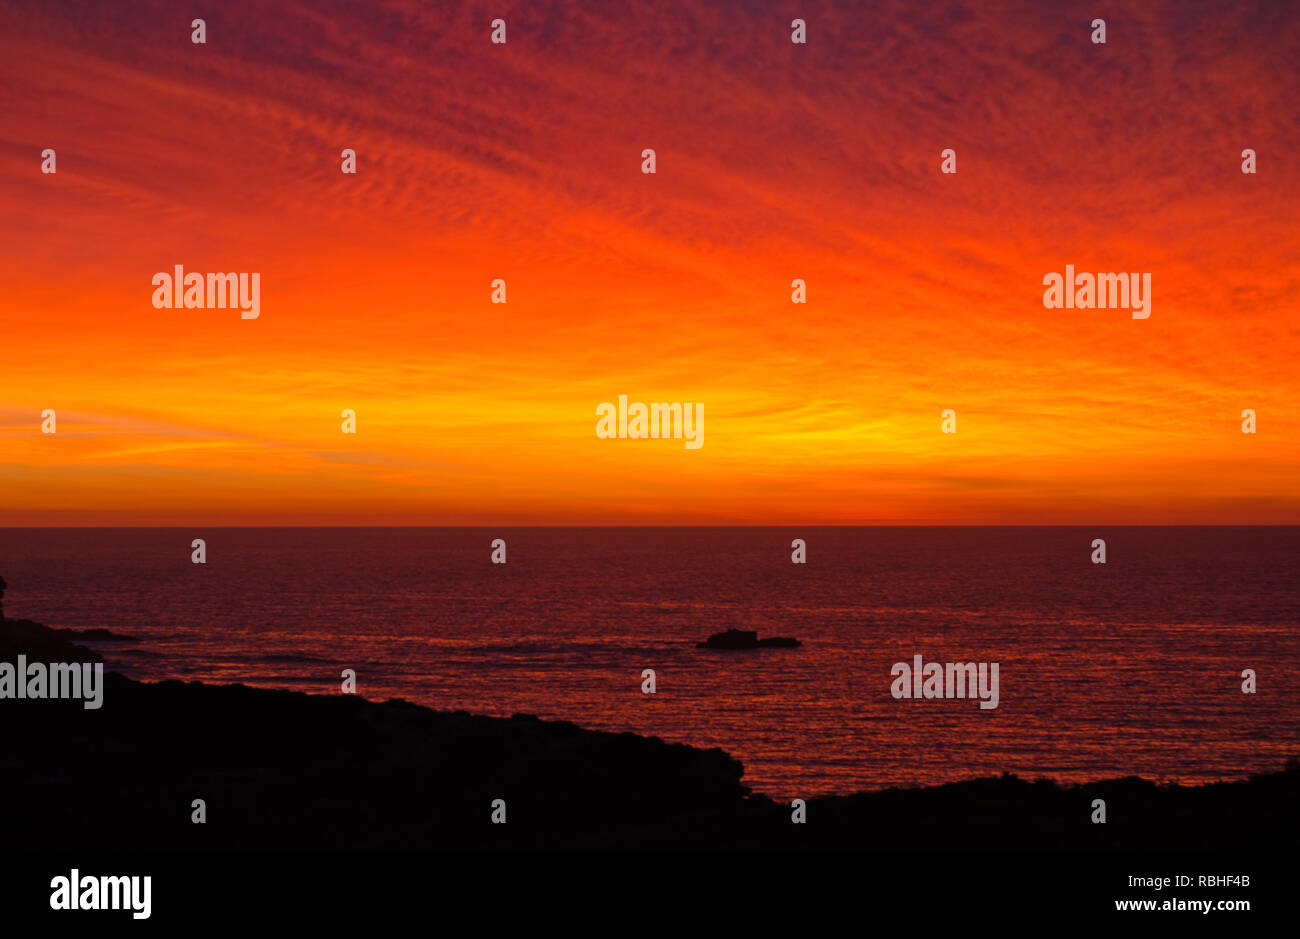 Bright orange sunrise in the algarve Stock Photo